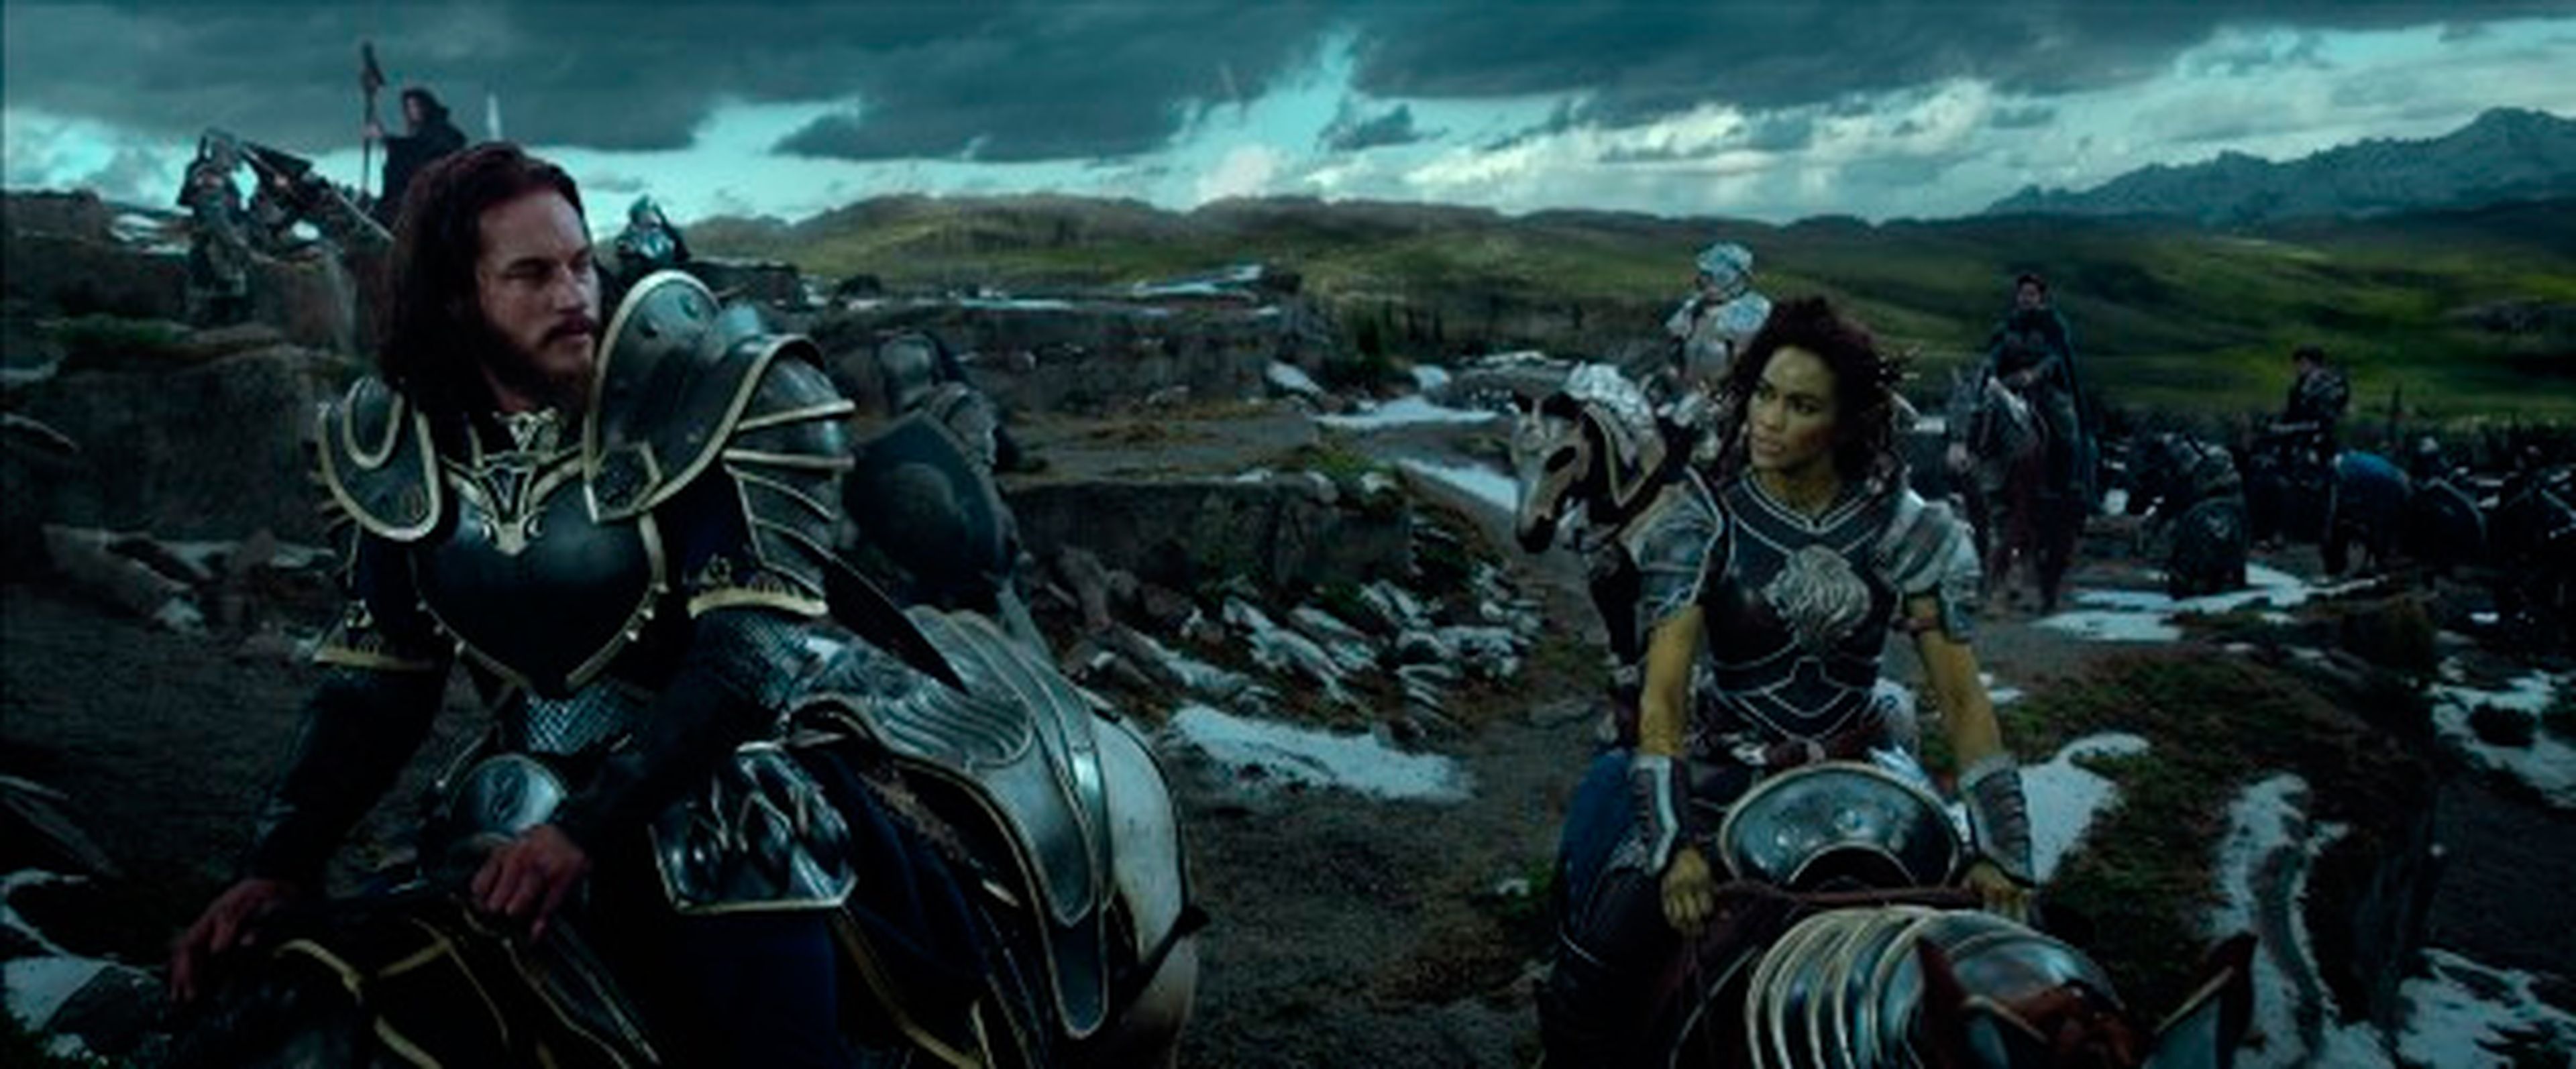 Warcraft: El origen – Nuevas e increíbles imágenes de la película